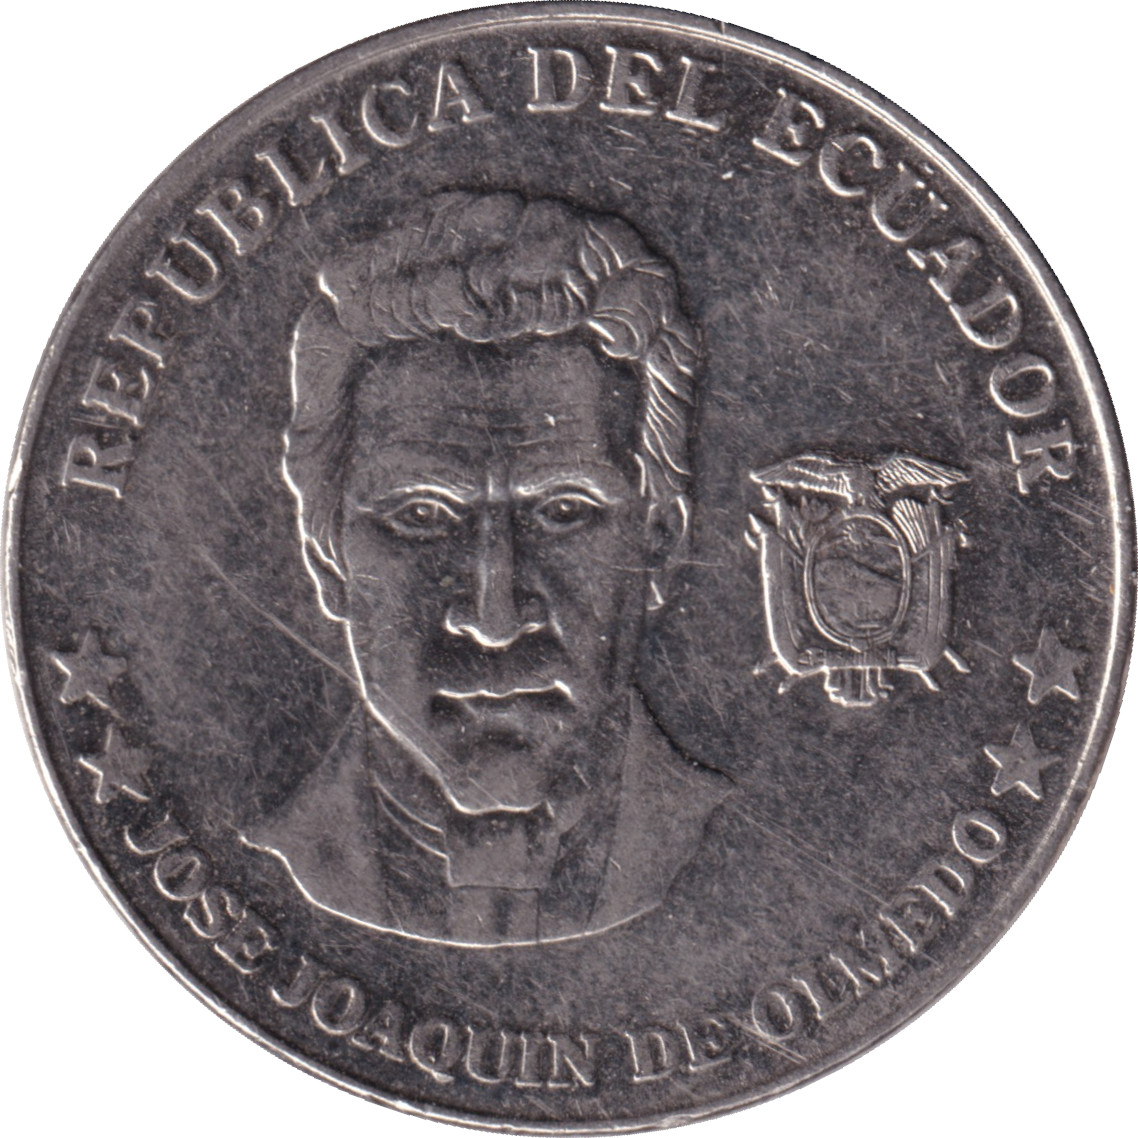 25 centavos - Jose Joaquin De Olmedo